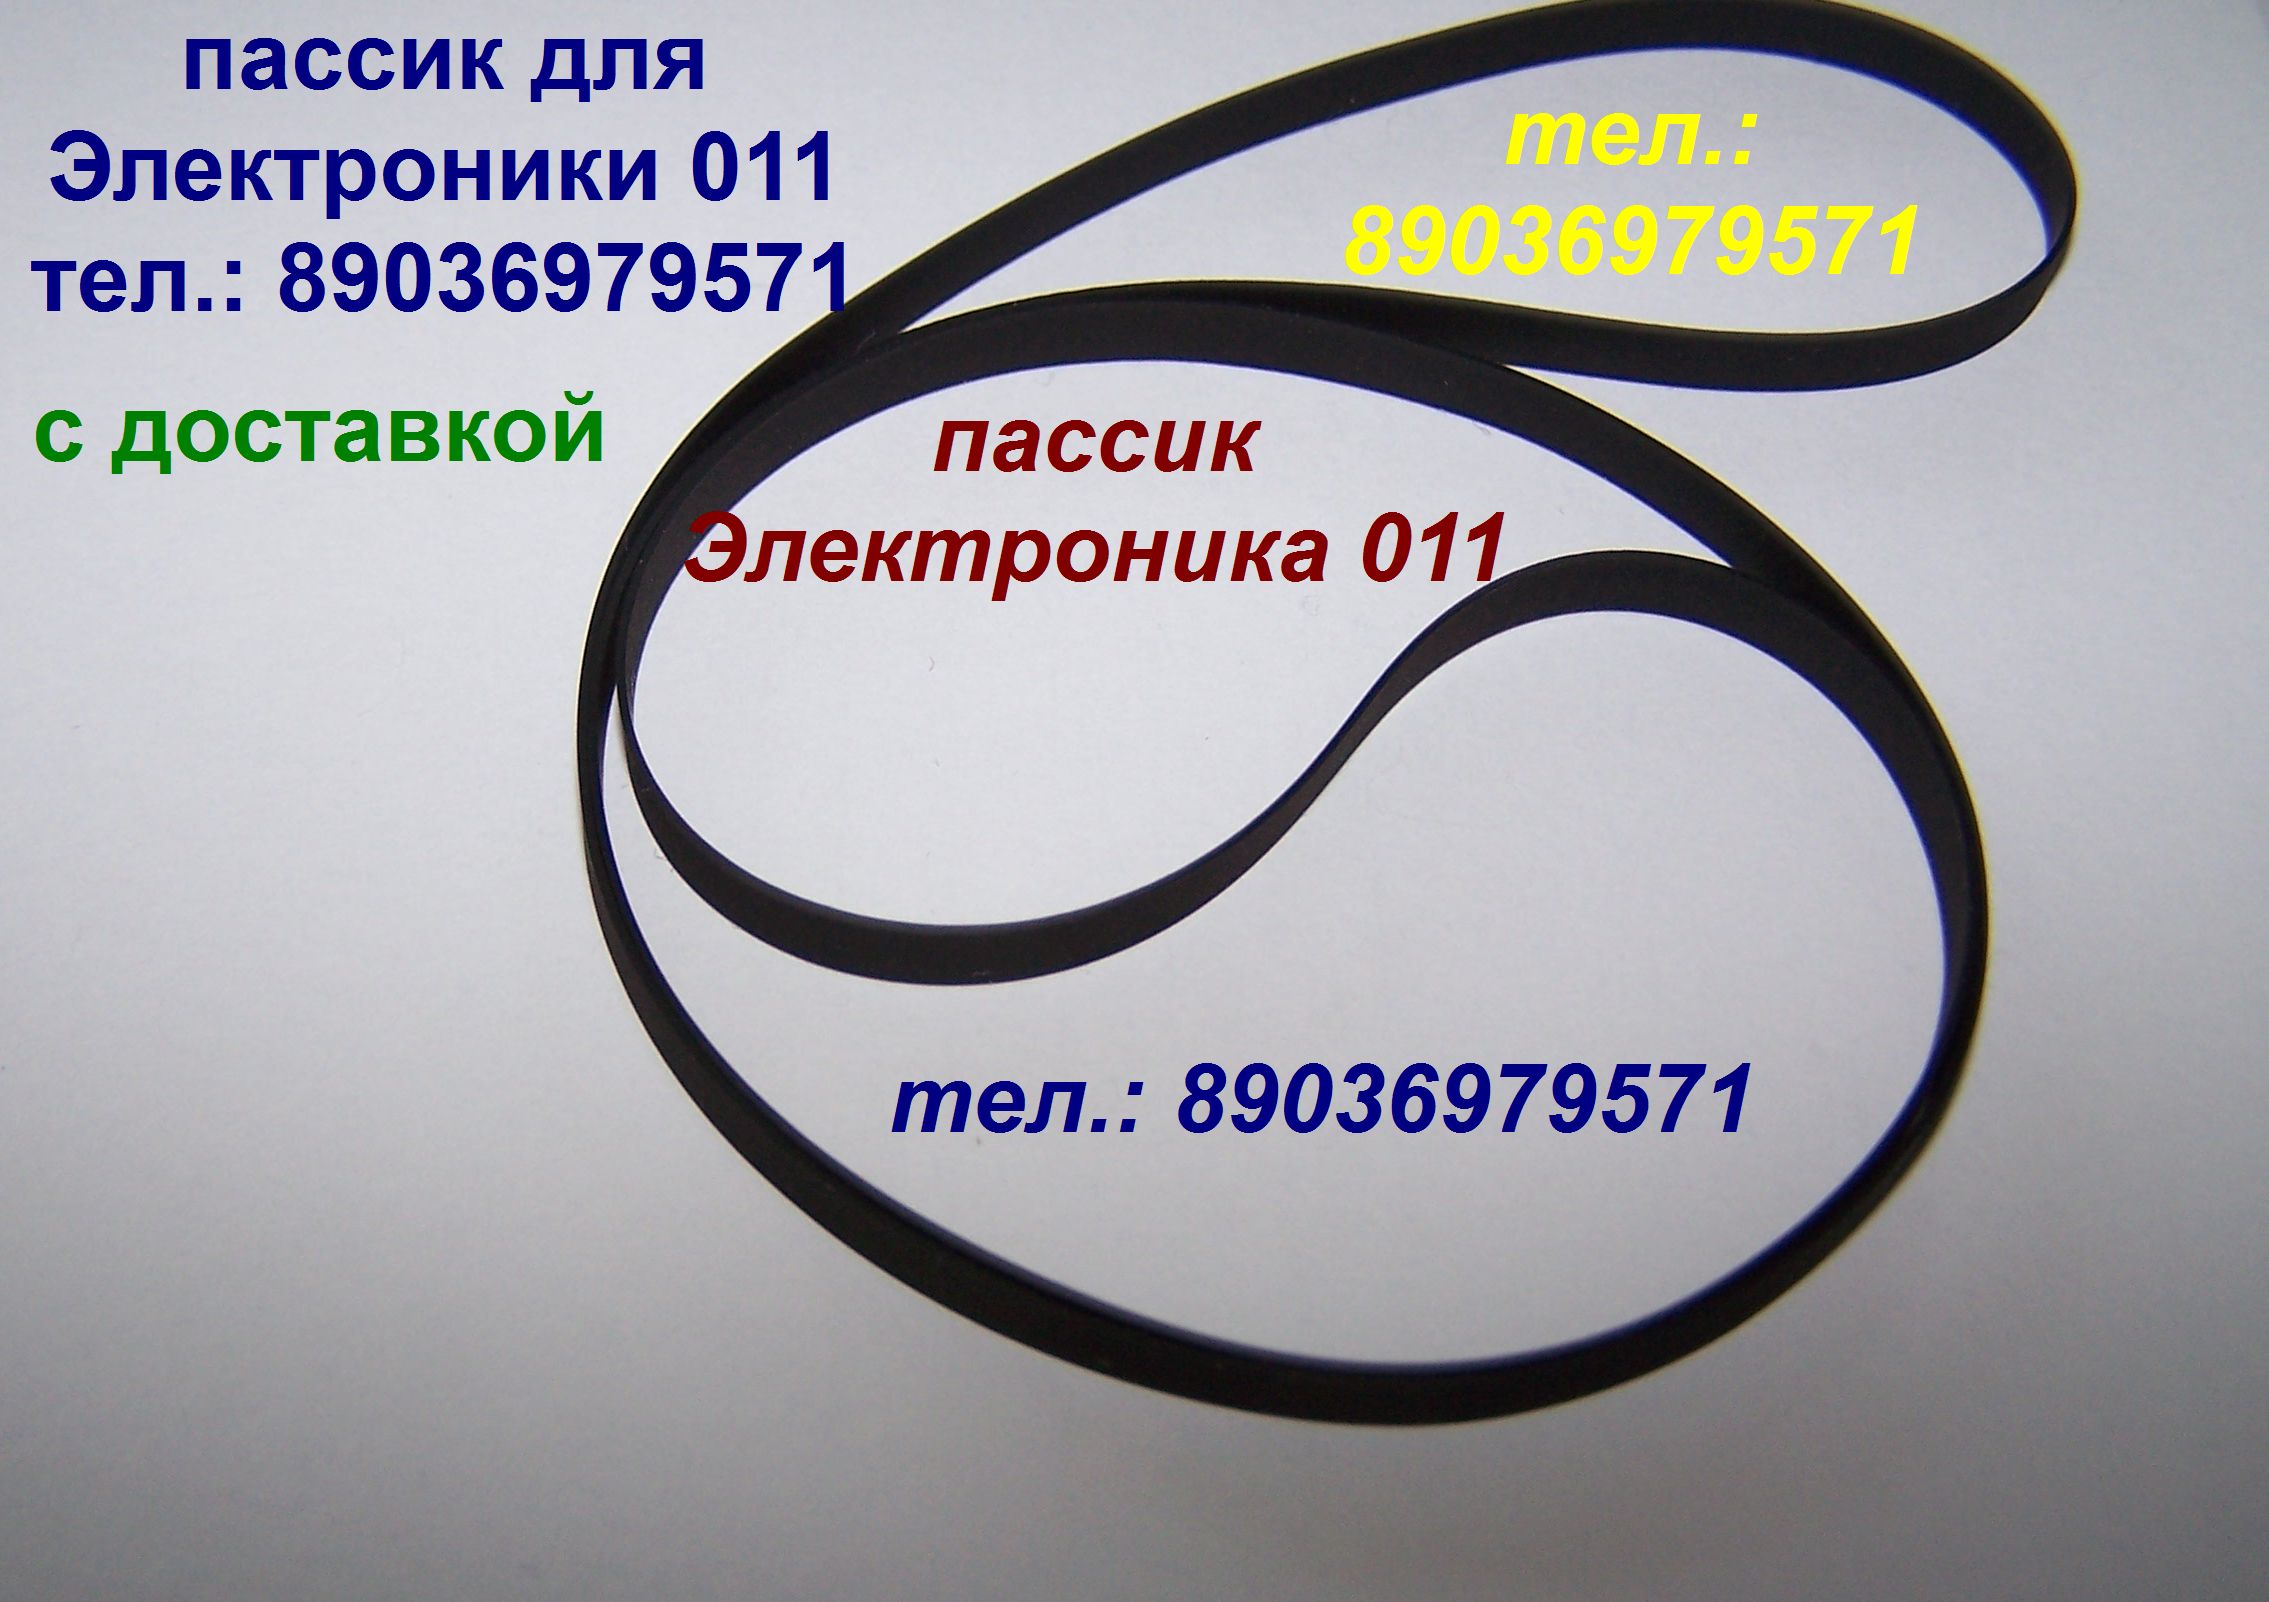 Пассик для Электроники Б1-011 пассик для Электроники 011 пасик головка проигрывателя Электроника Б1-011 в городе Москва, фото 1, стоимость: 1 руб.